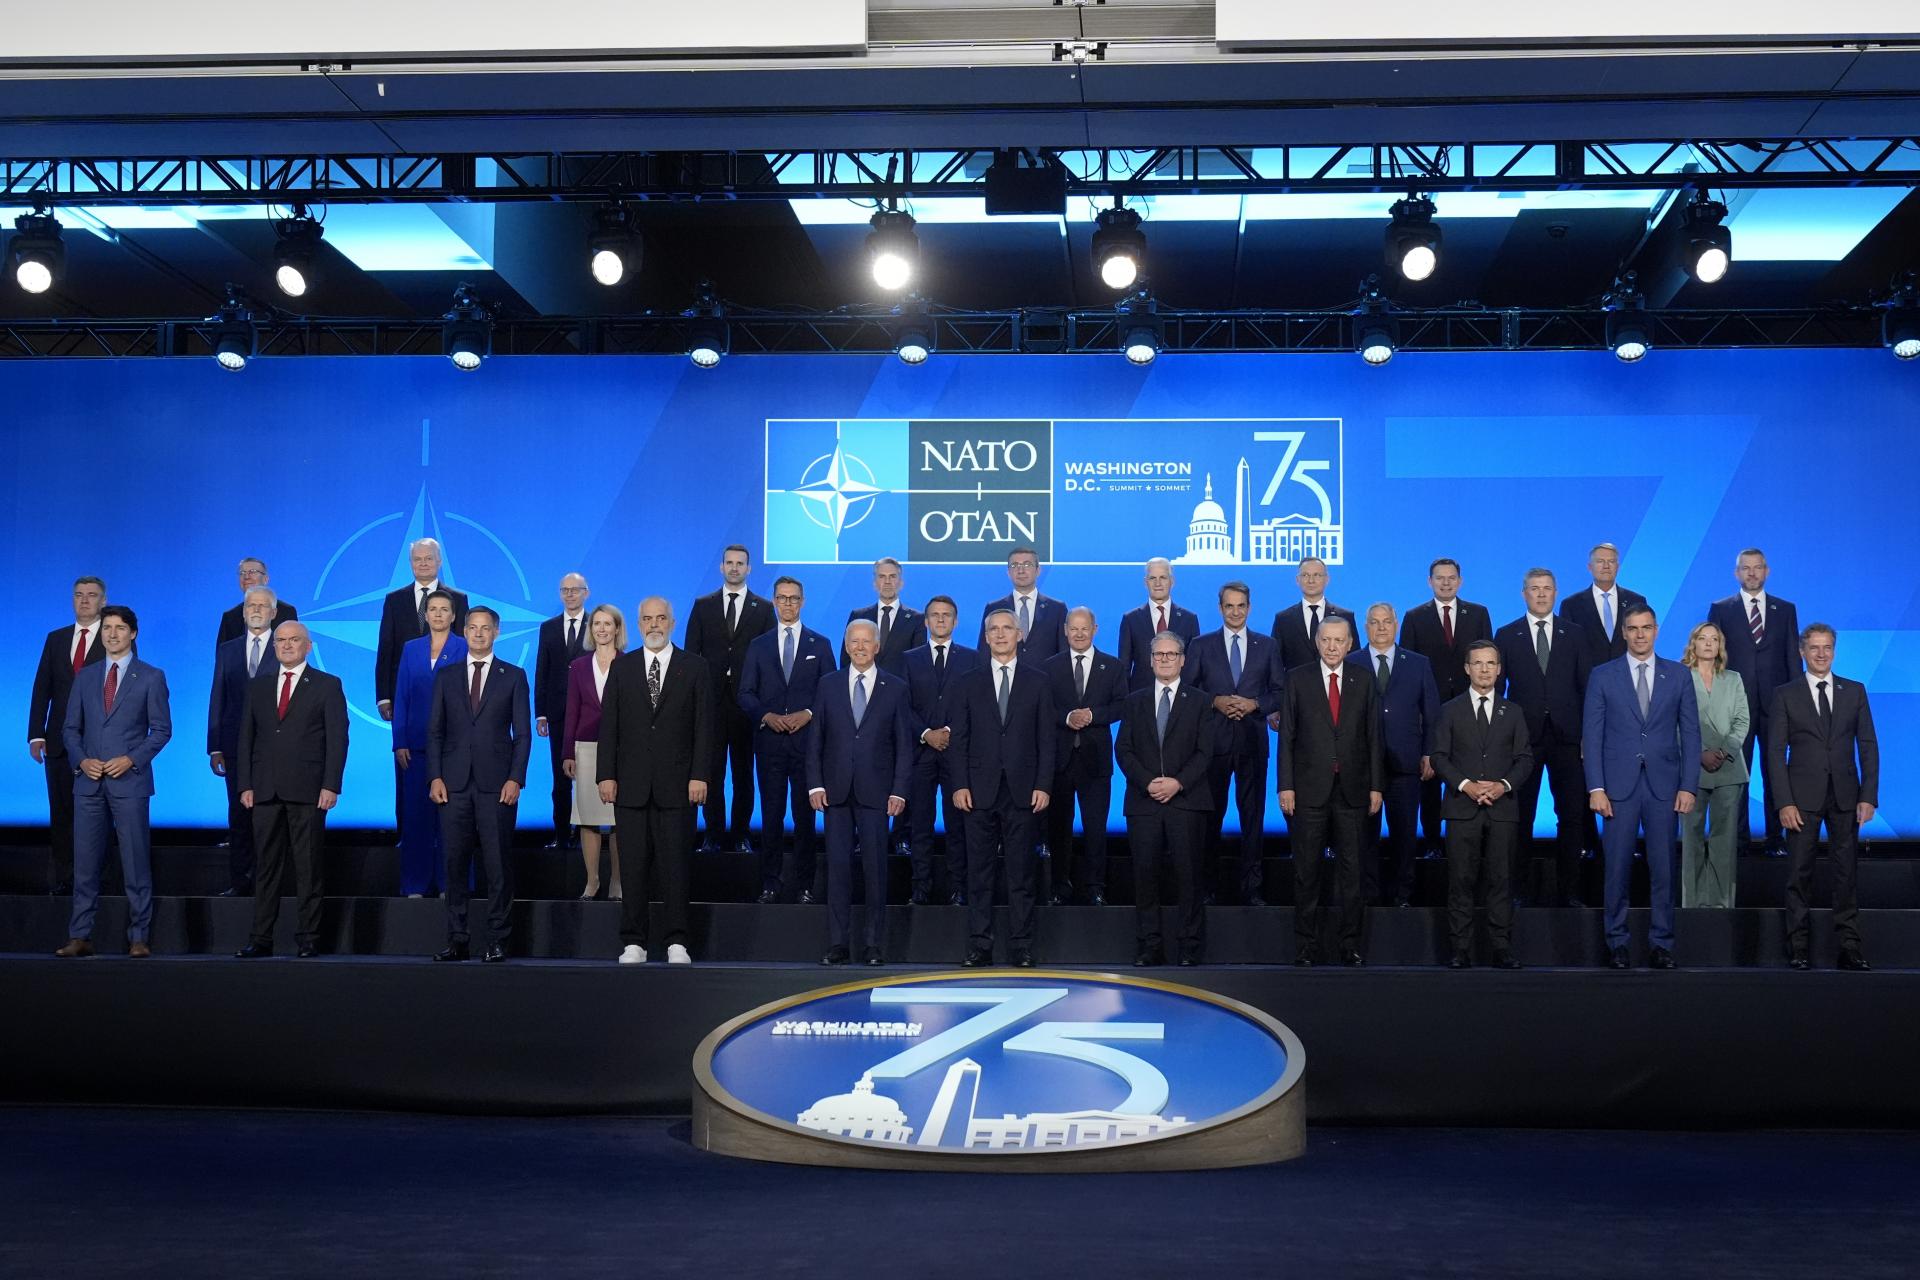 Nie je otázkou či, ale kedy. Budúcnosť Ukrajiny je v Aliancii, uvádza sa vo vyhlásení zo summitu lídrov NATO